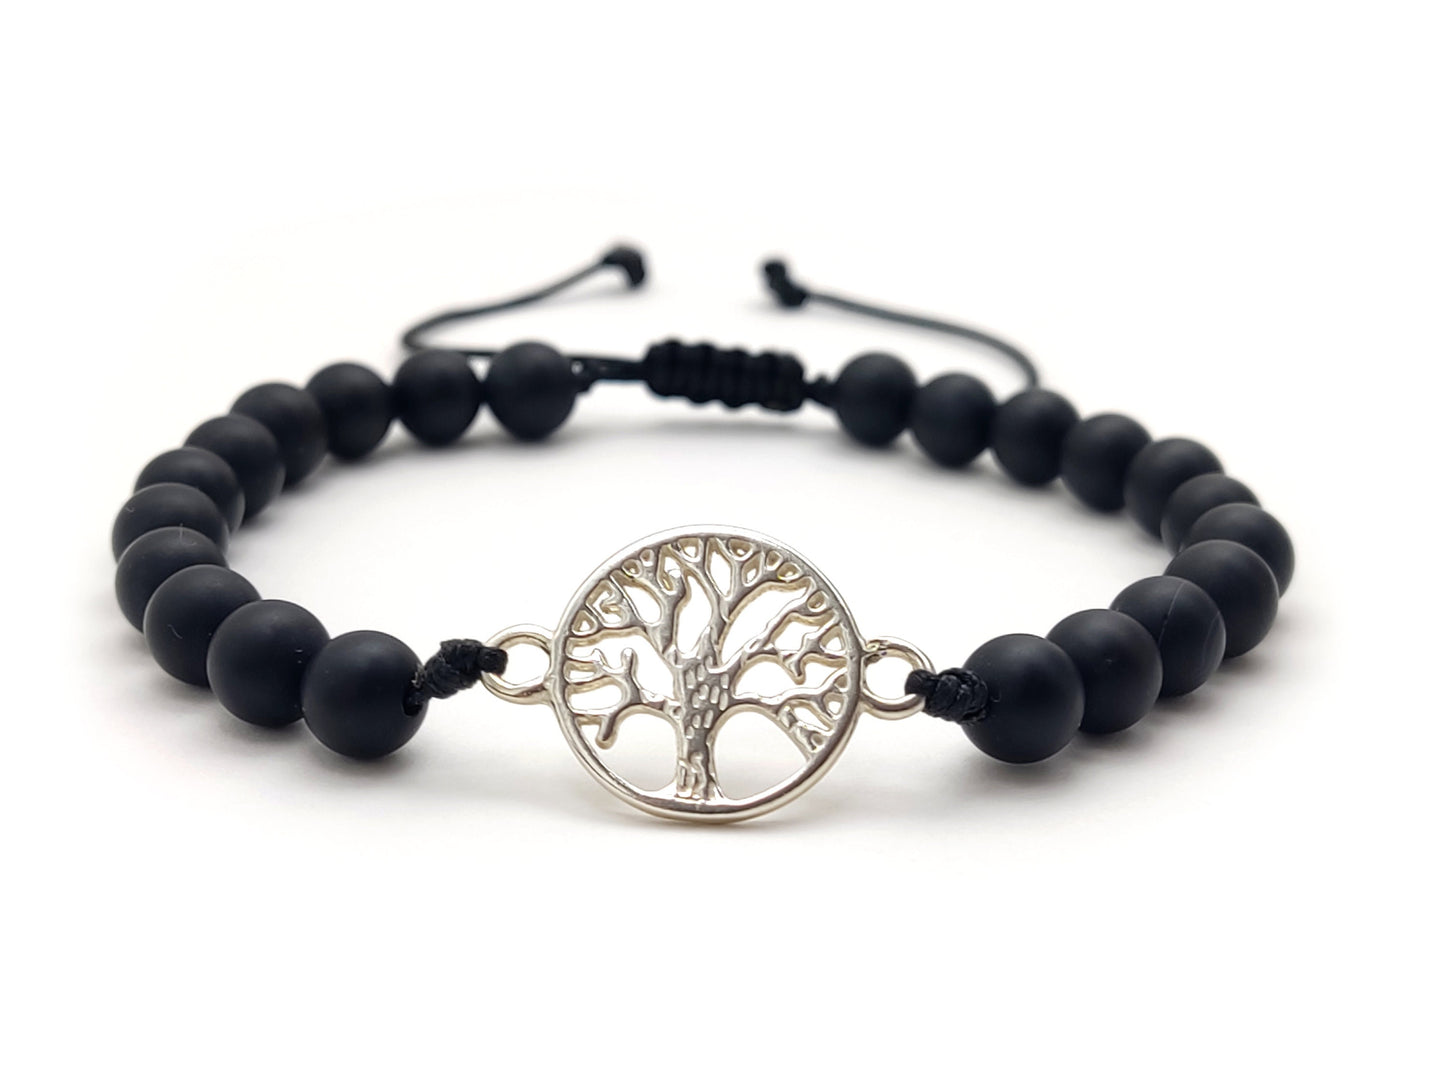 Greek Silver Bracelet, Onyx Jewelry, Tree Of Life Bracelet Made With Matt Onyx Black Stones 6mm, Griechischer Silber Armband, Bijoux Grece